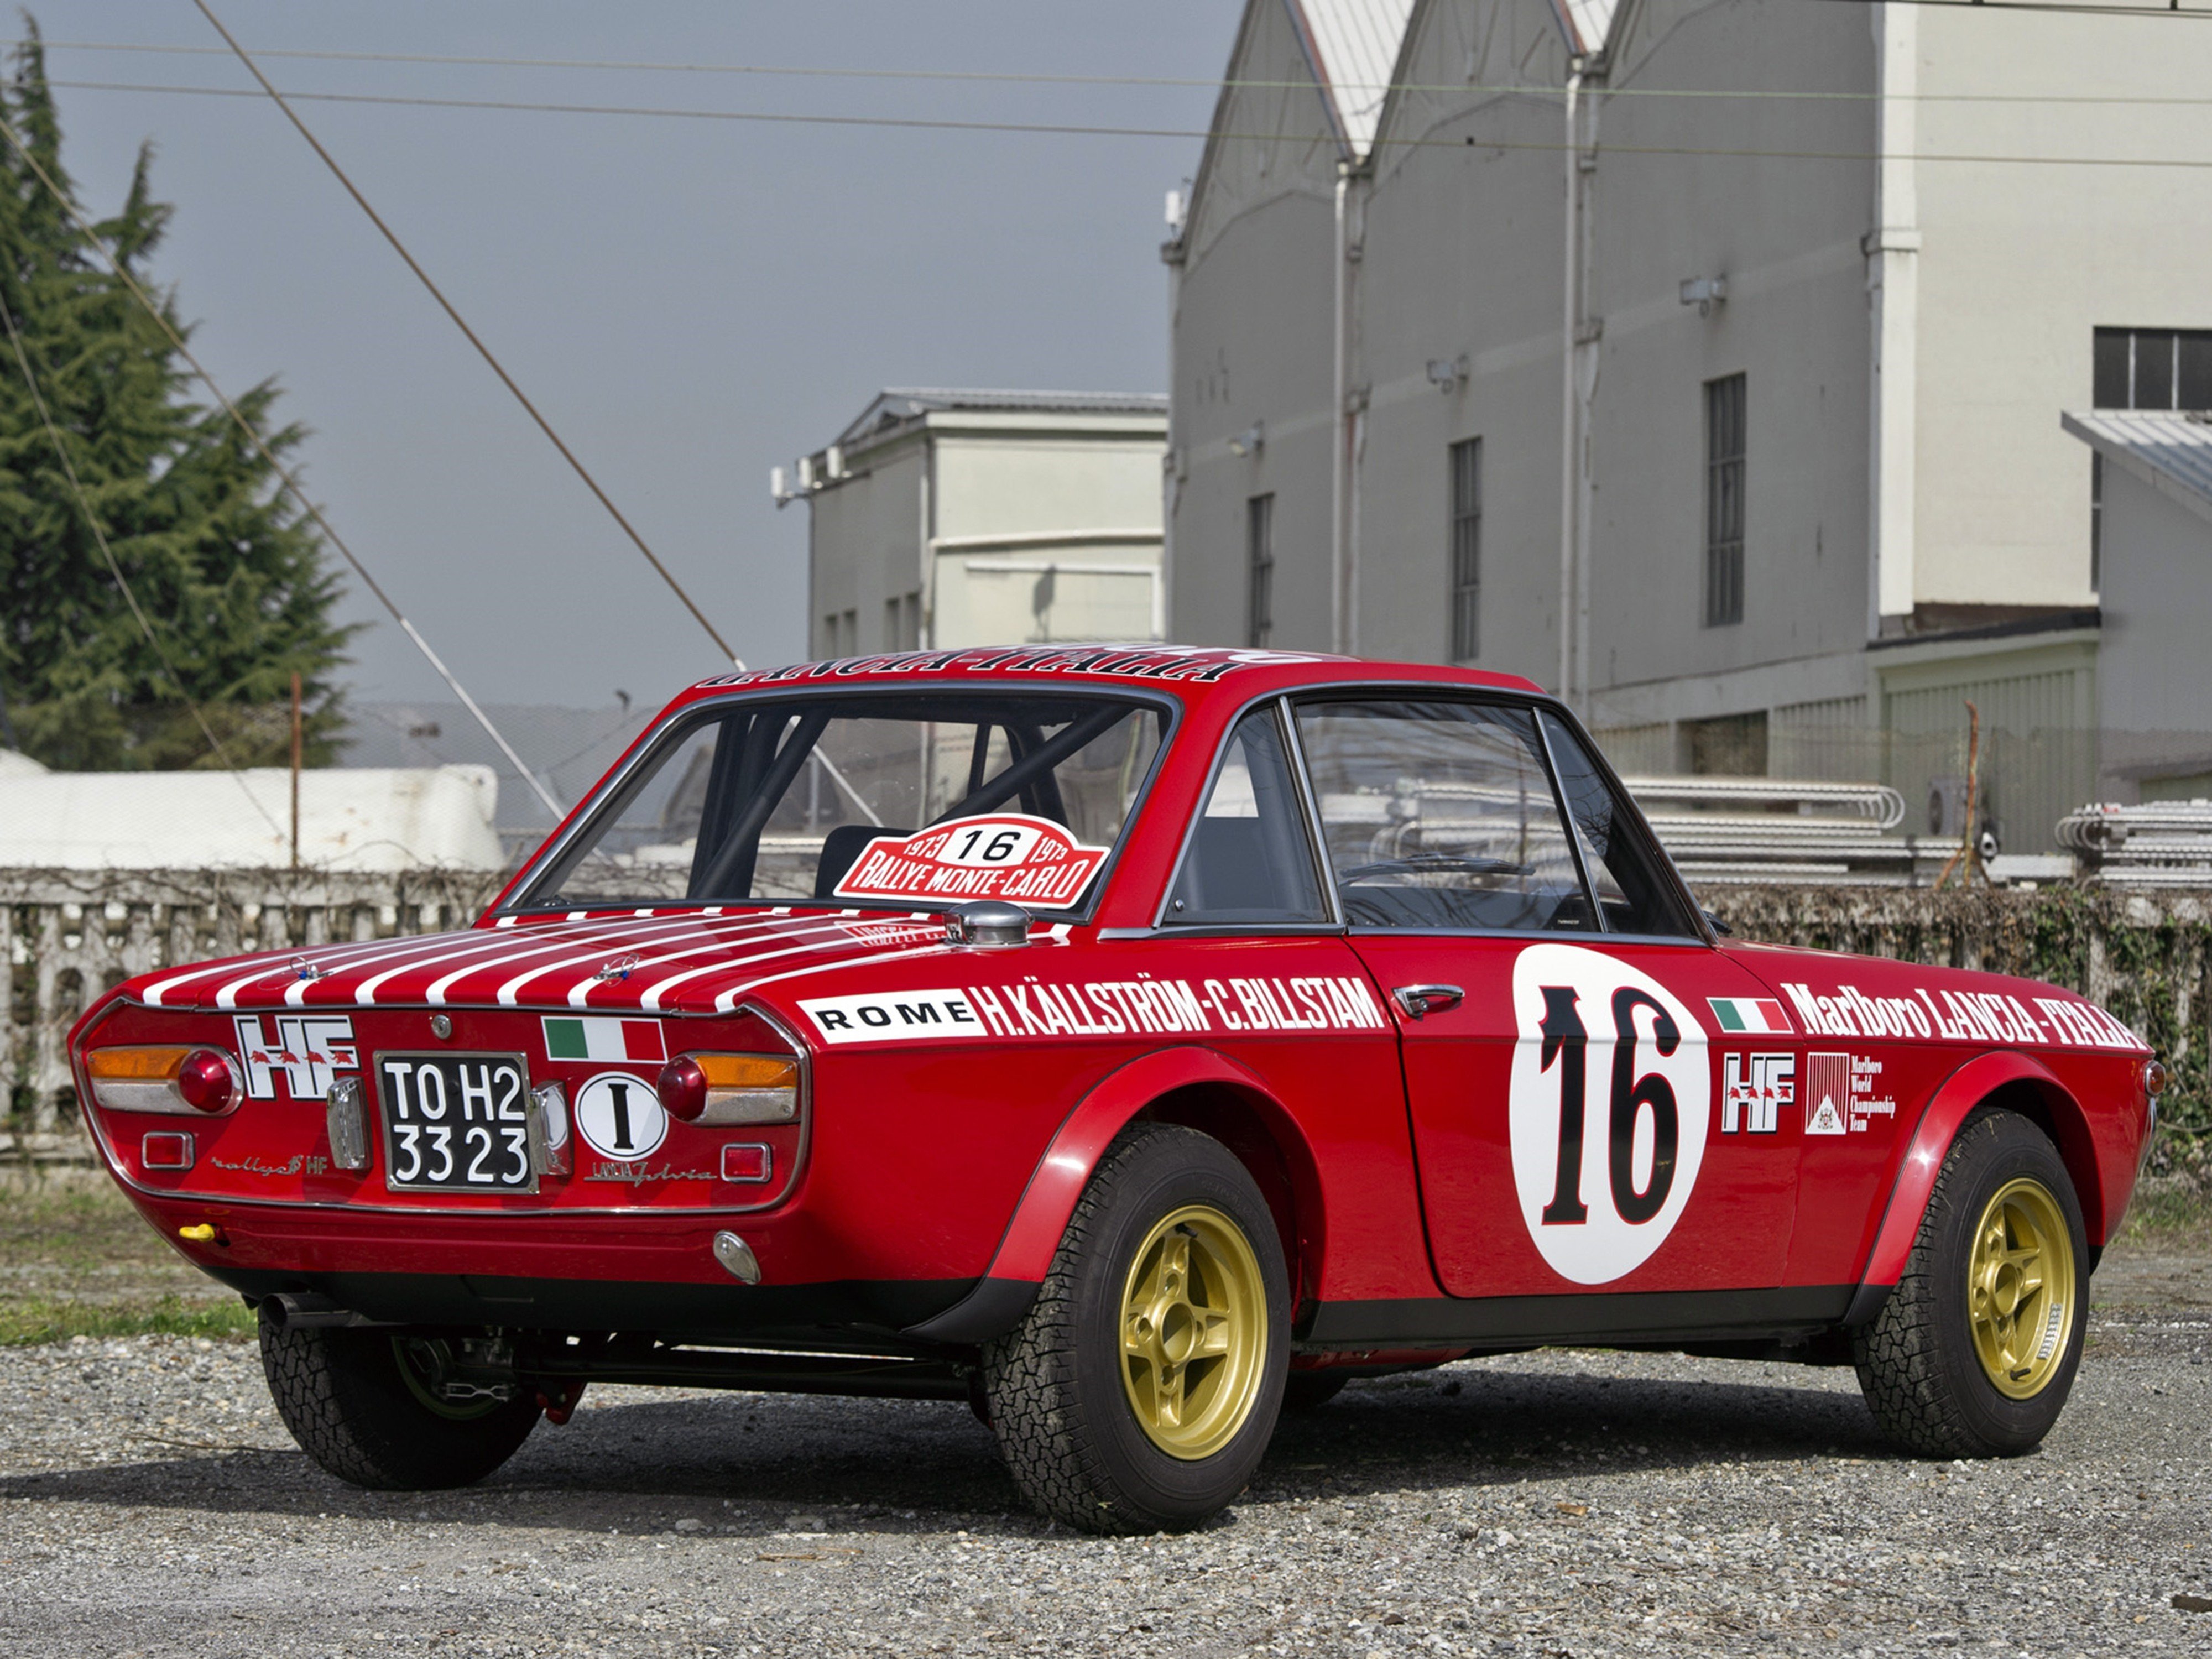 1970, Lancia, Fulvia, Coupe, 1600hf, Corsa, Race, Rally, Car, Racing, Italy, 4000x3000 Wallpaper